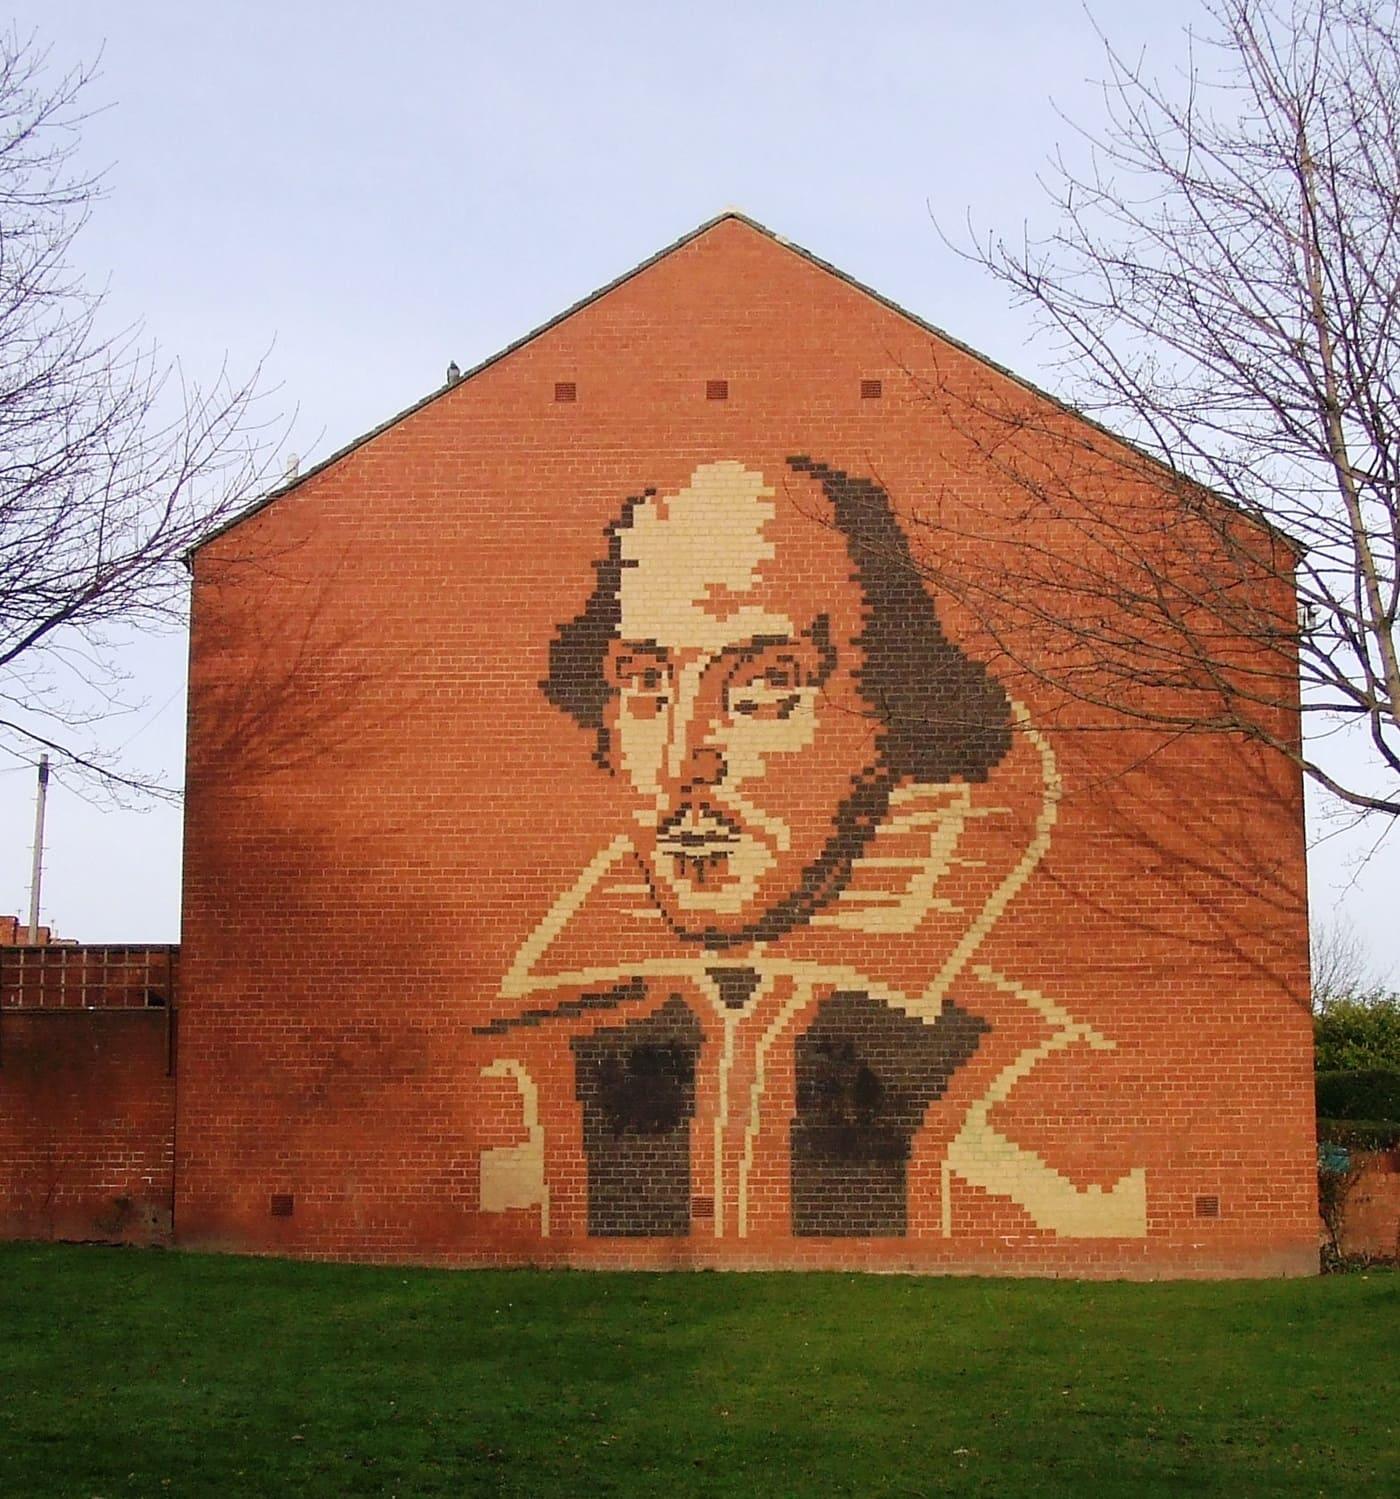 7.4km Newcastle Walk: Jesmond Dene, Shakespeare Mural